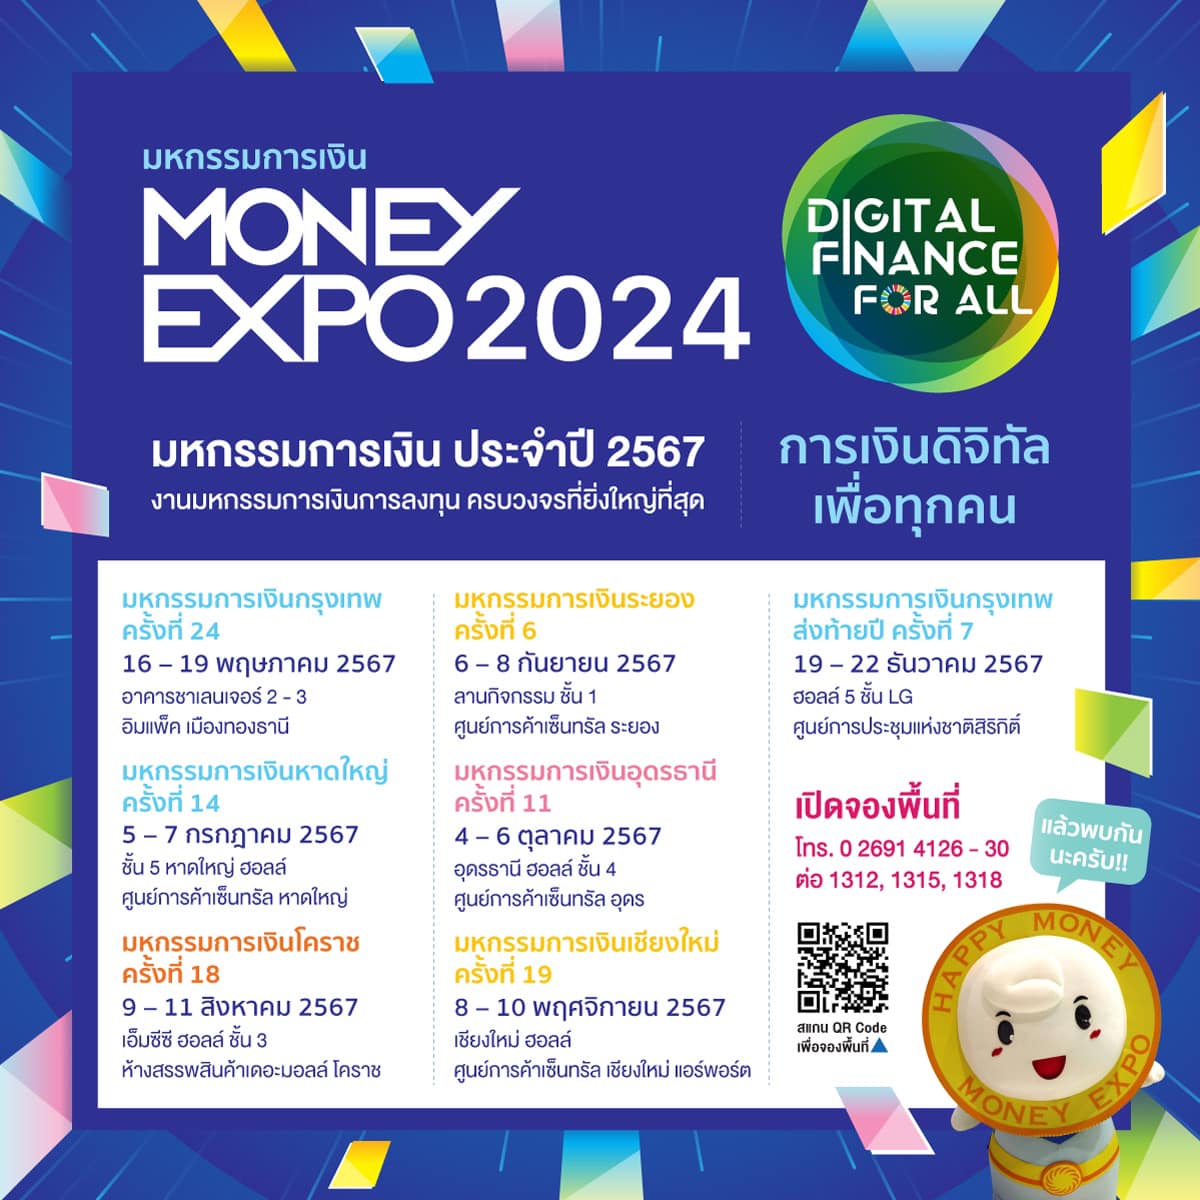 MONEY EXPO 2024 BANGKOK YEAR-END